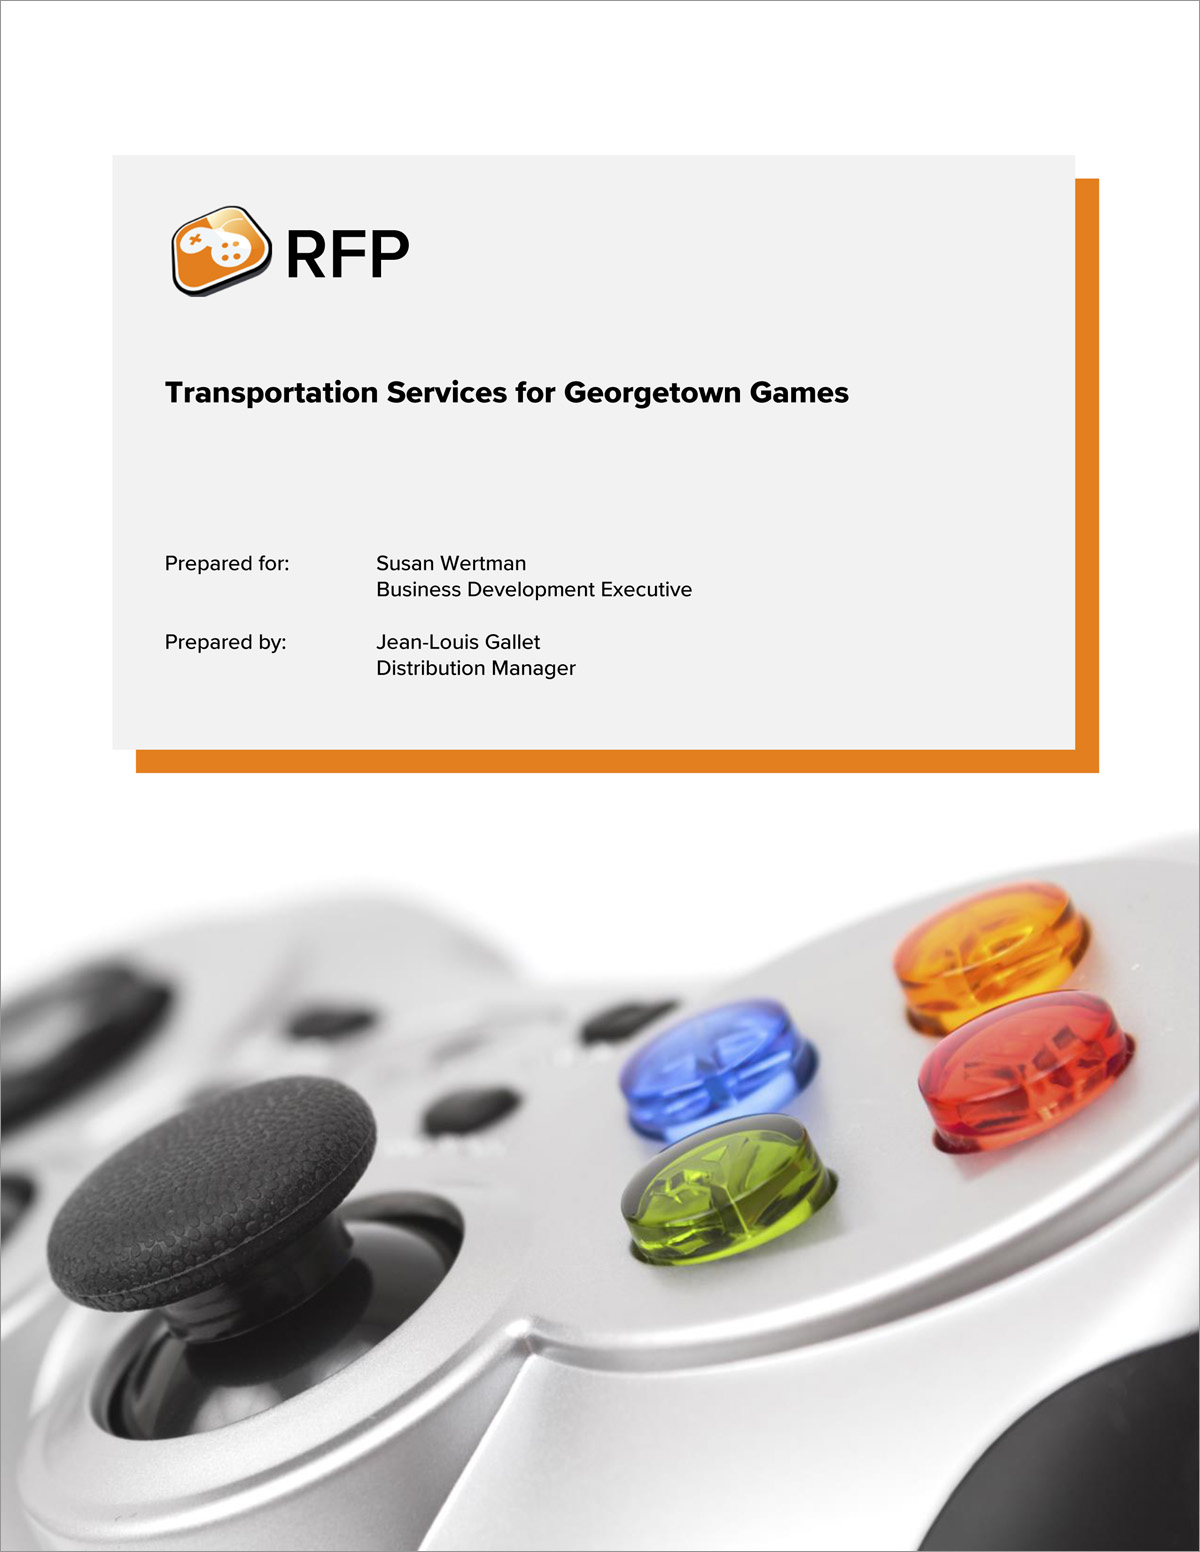 Transportation Request for Proposal (RFP) Sample 5 Steps